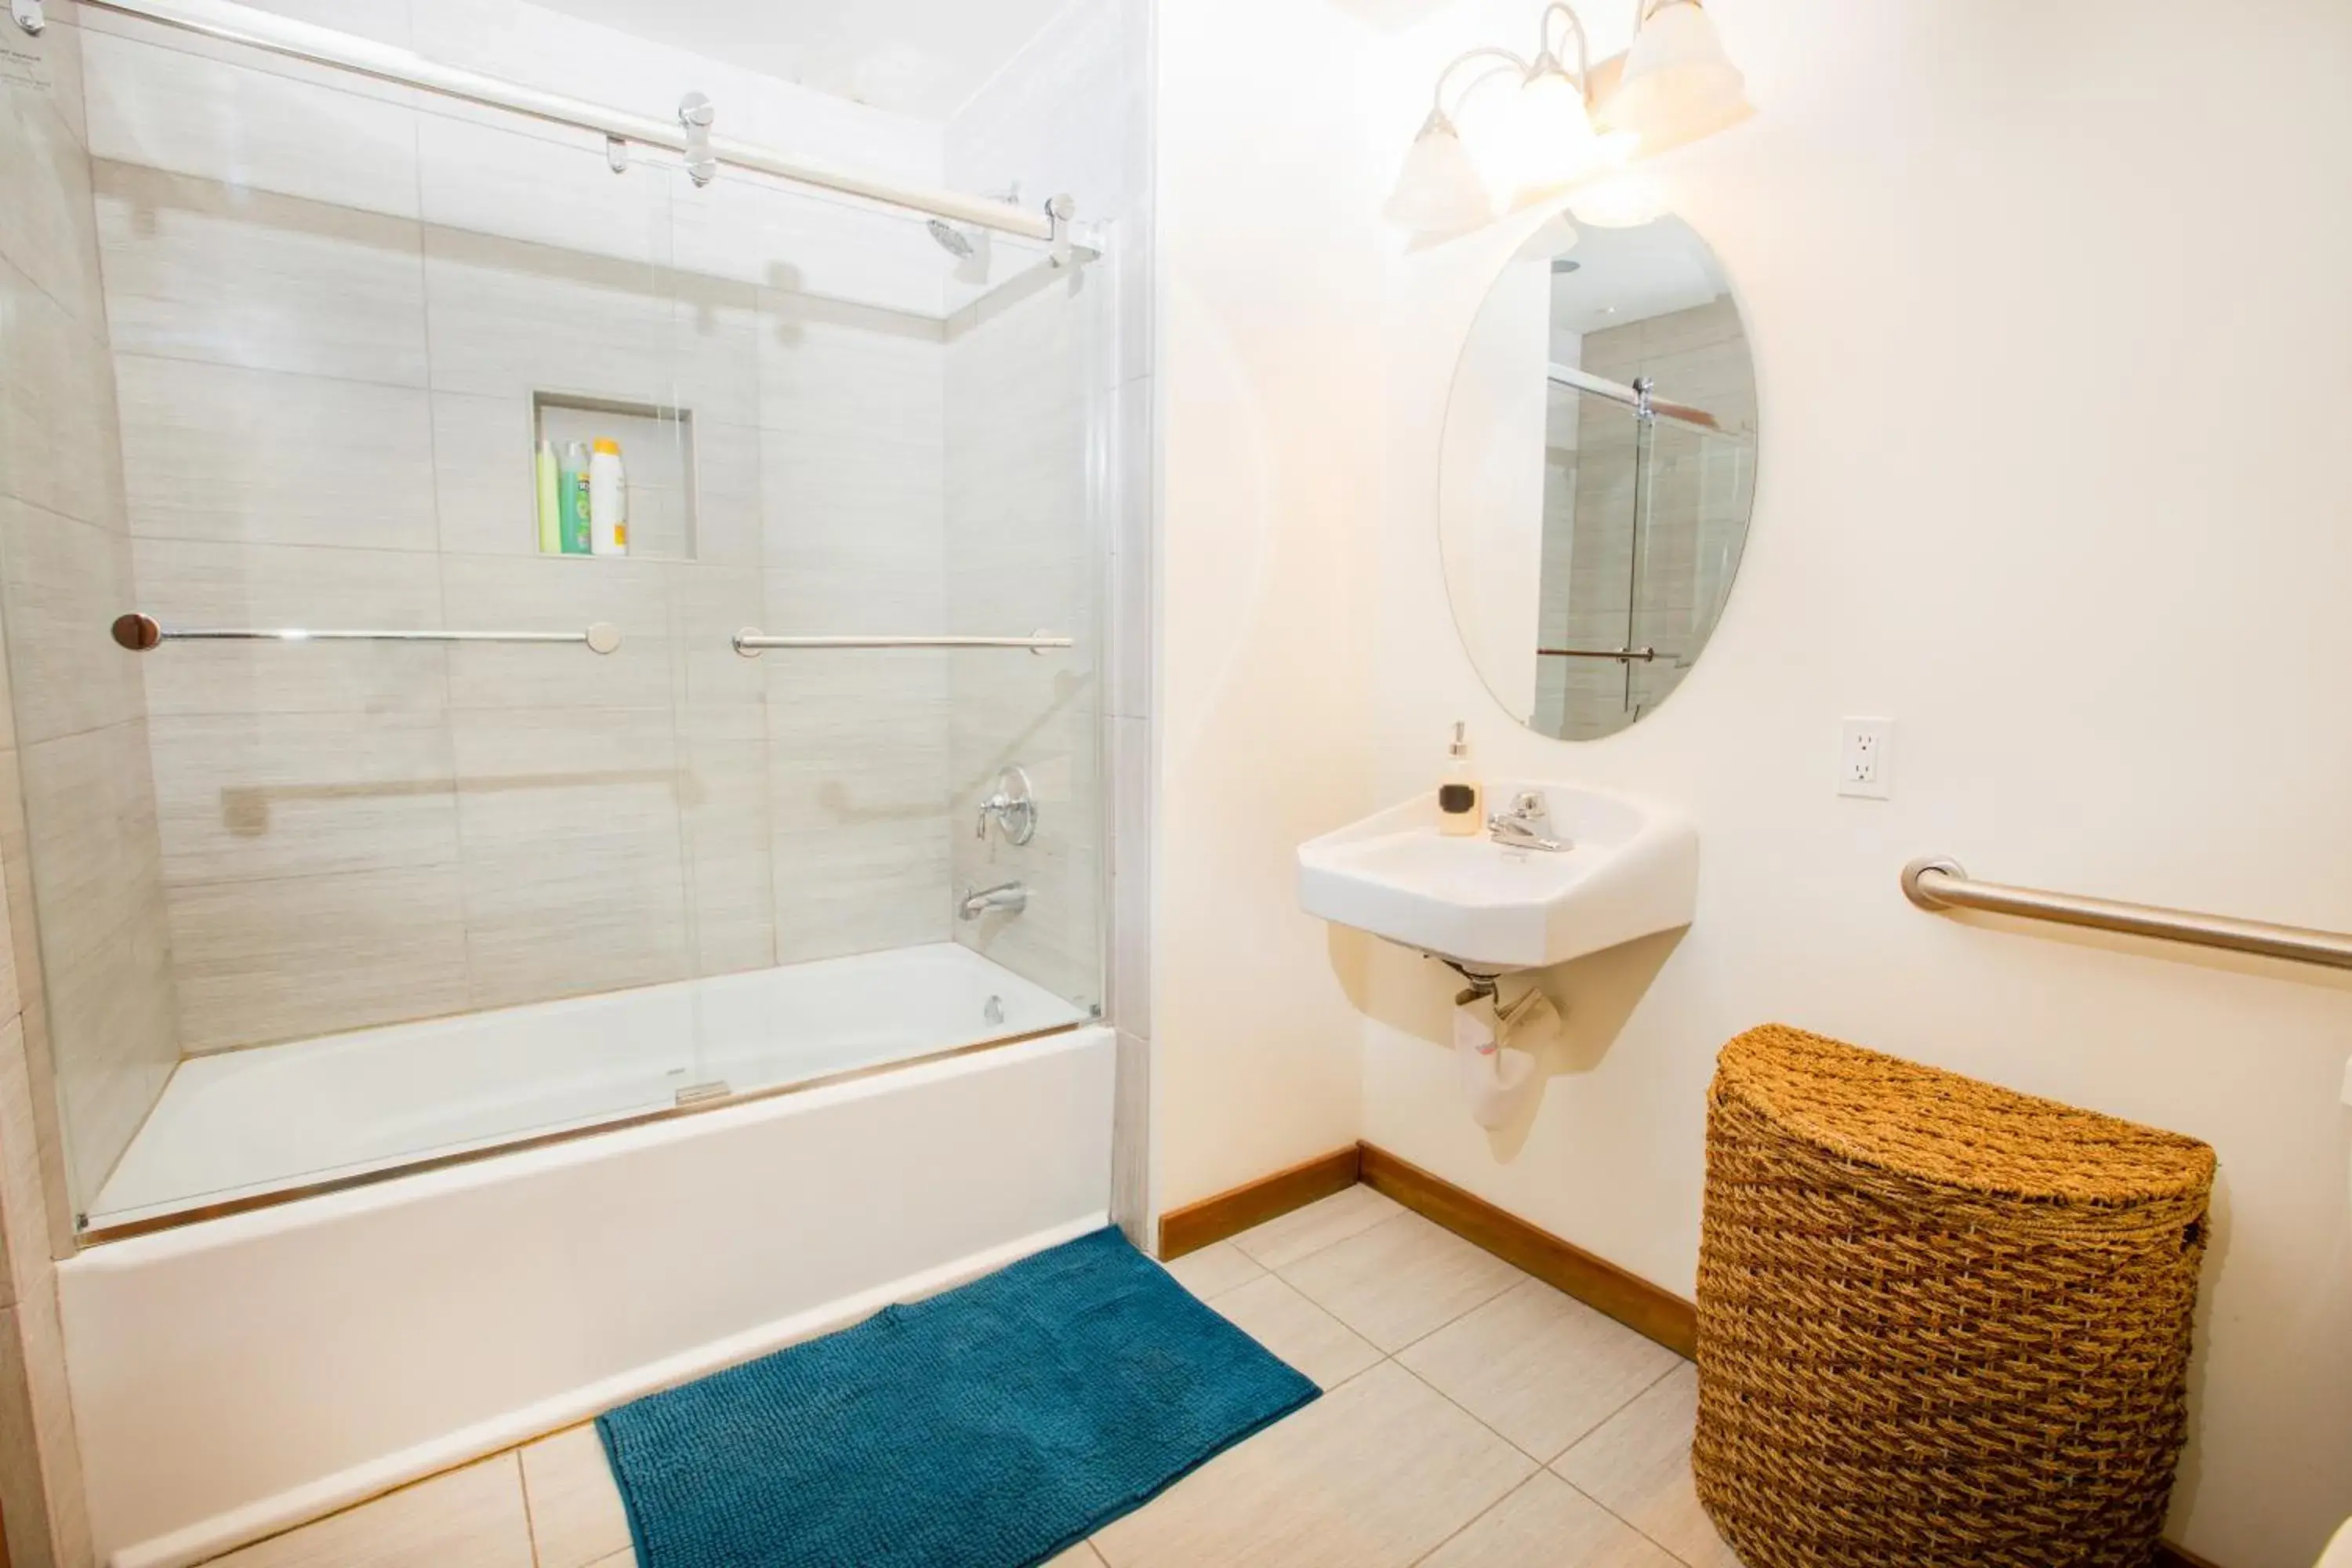 Bathroom in International Travelers House Adventure Hostel